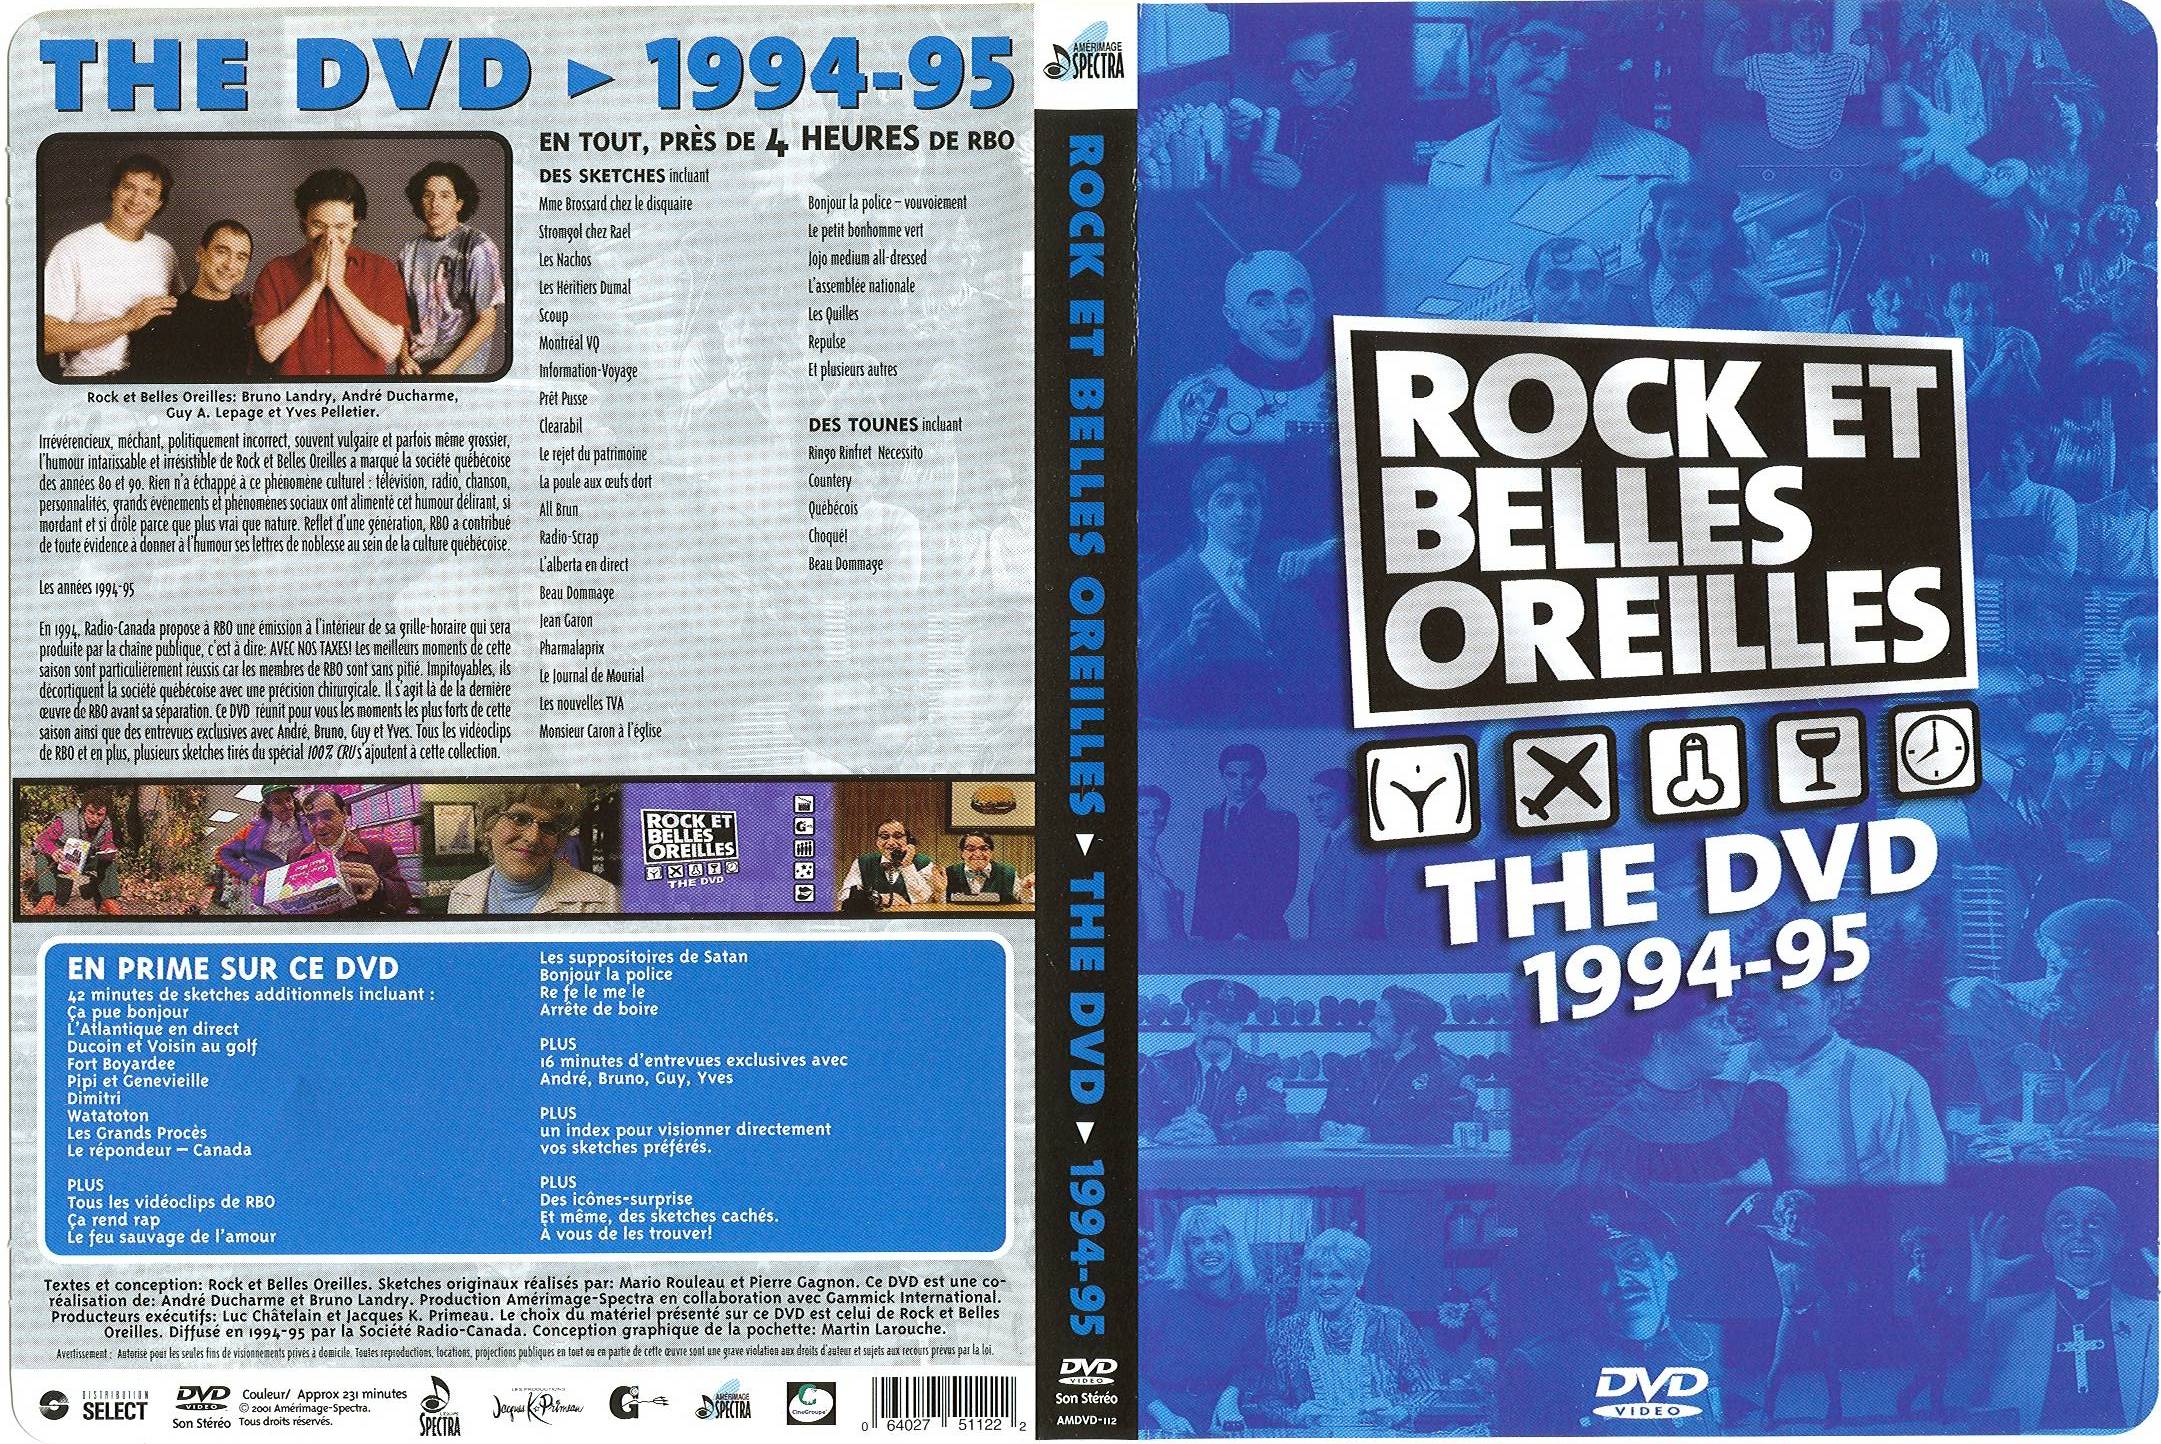 Jaquette DVD Rock et belles oreilles 1994-95